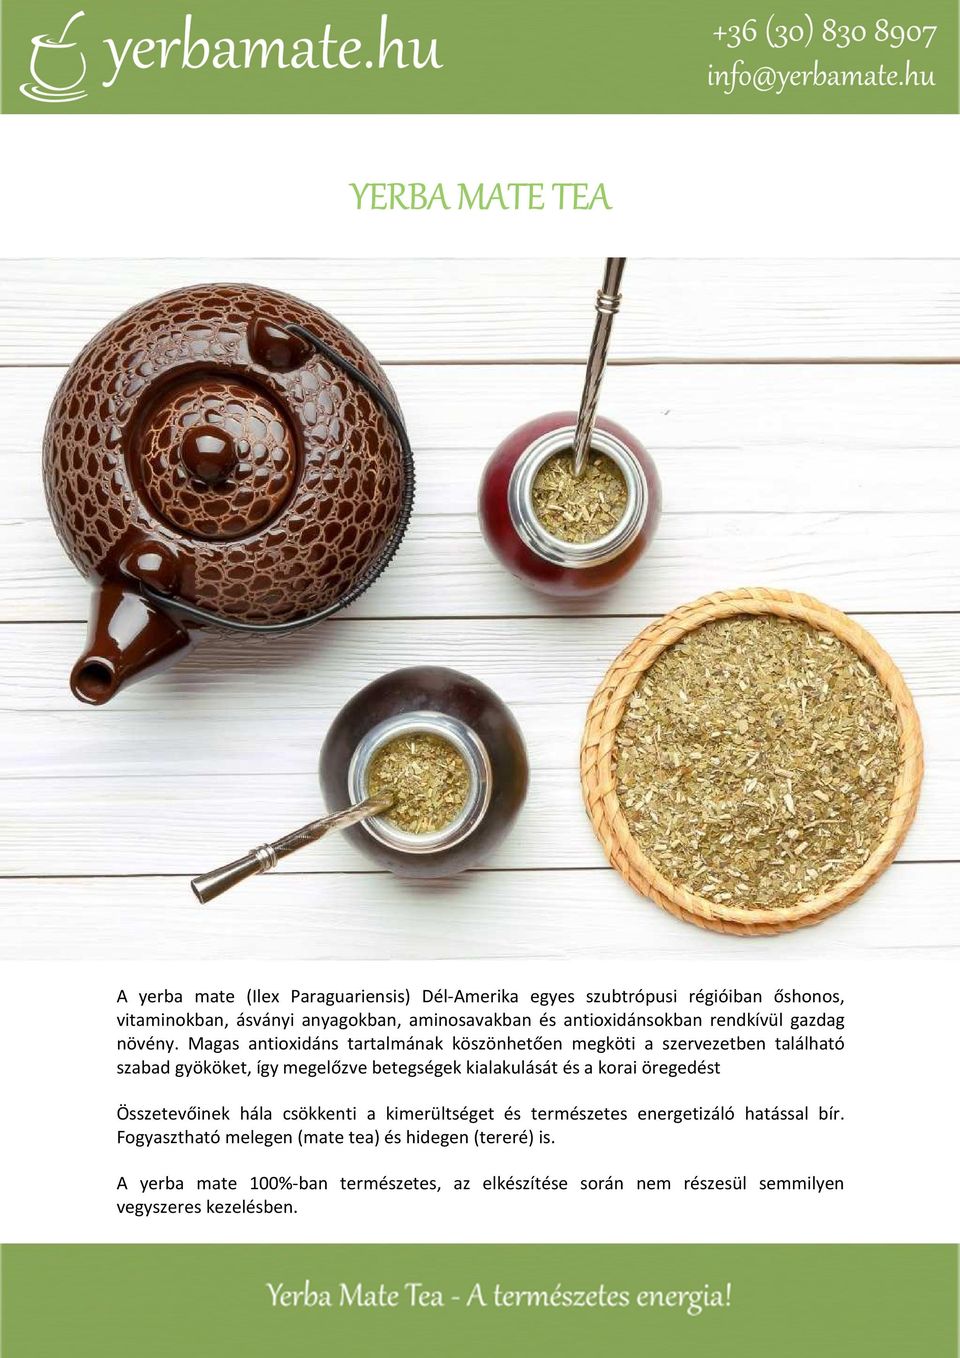 YERBA MATE TEA. A yerba mate 100%-ban természetes, az elkészítése során nem  részesül semmilyen vegyszeres kezelésben. - PDF Free Download